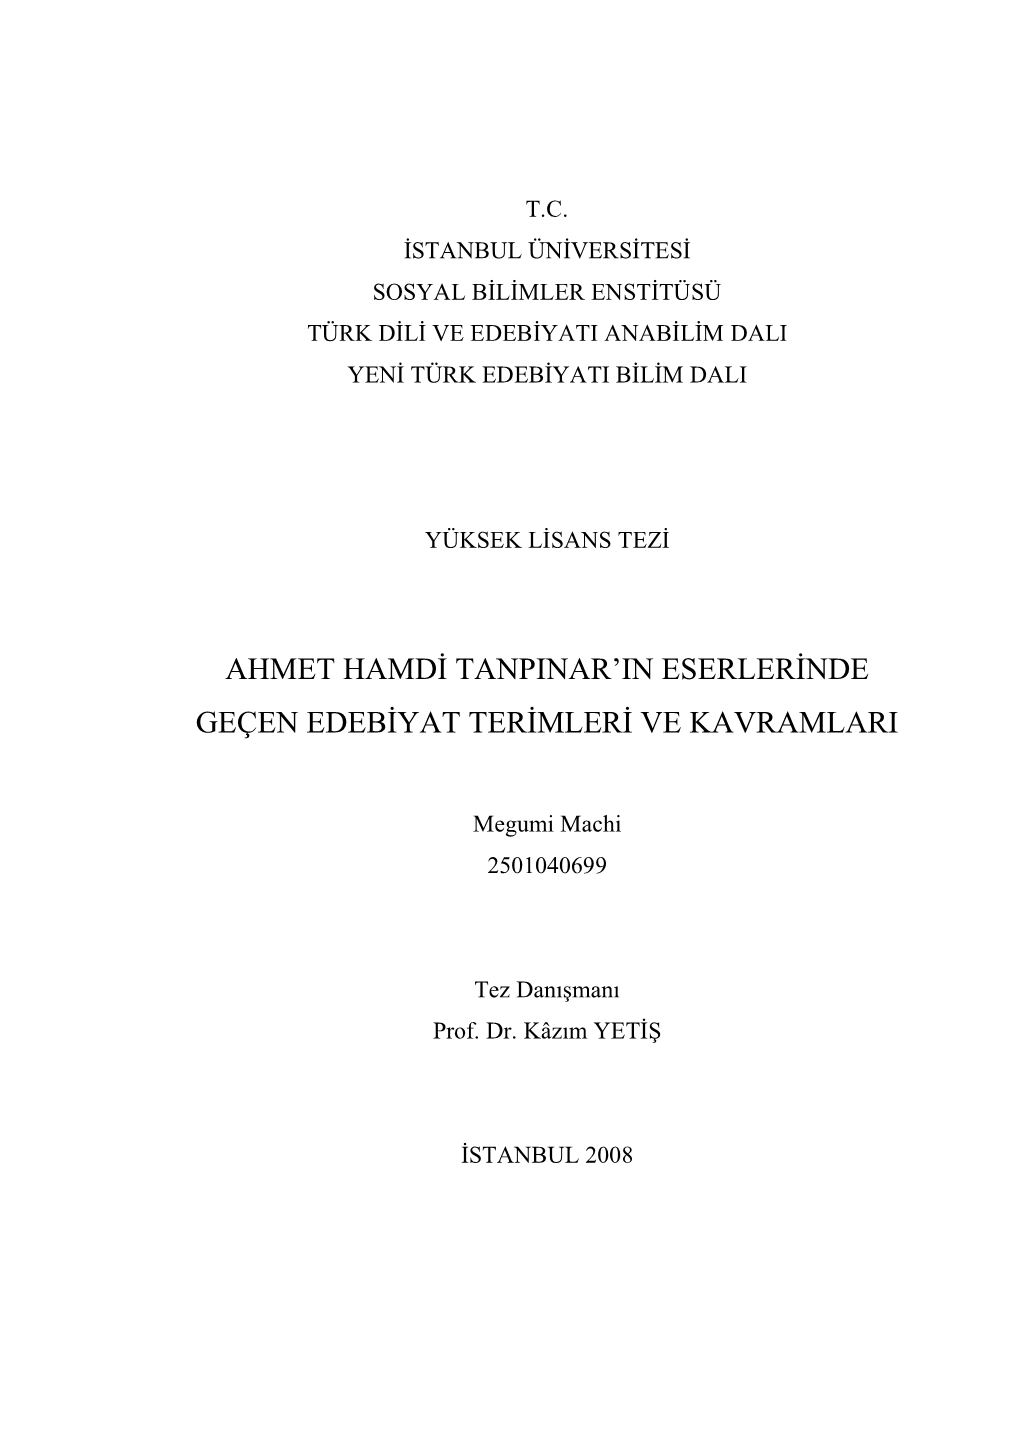 Ahmet Hamdi Tanpinar'in Eserlerinde Geçen Edebiyat